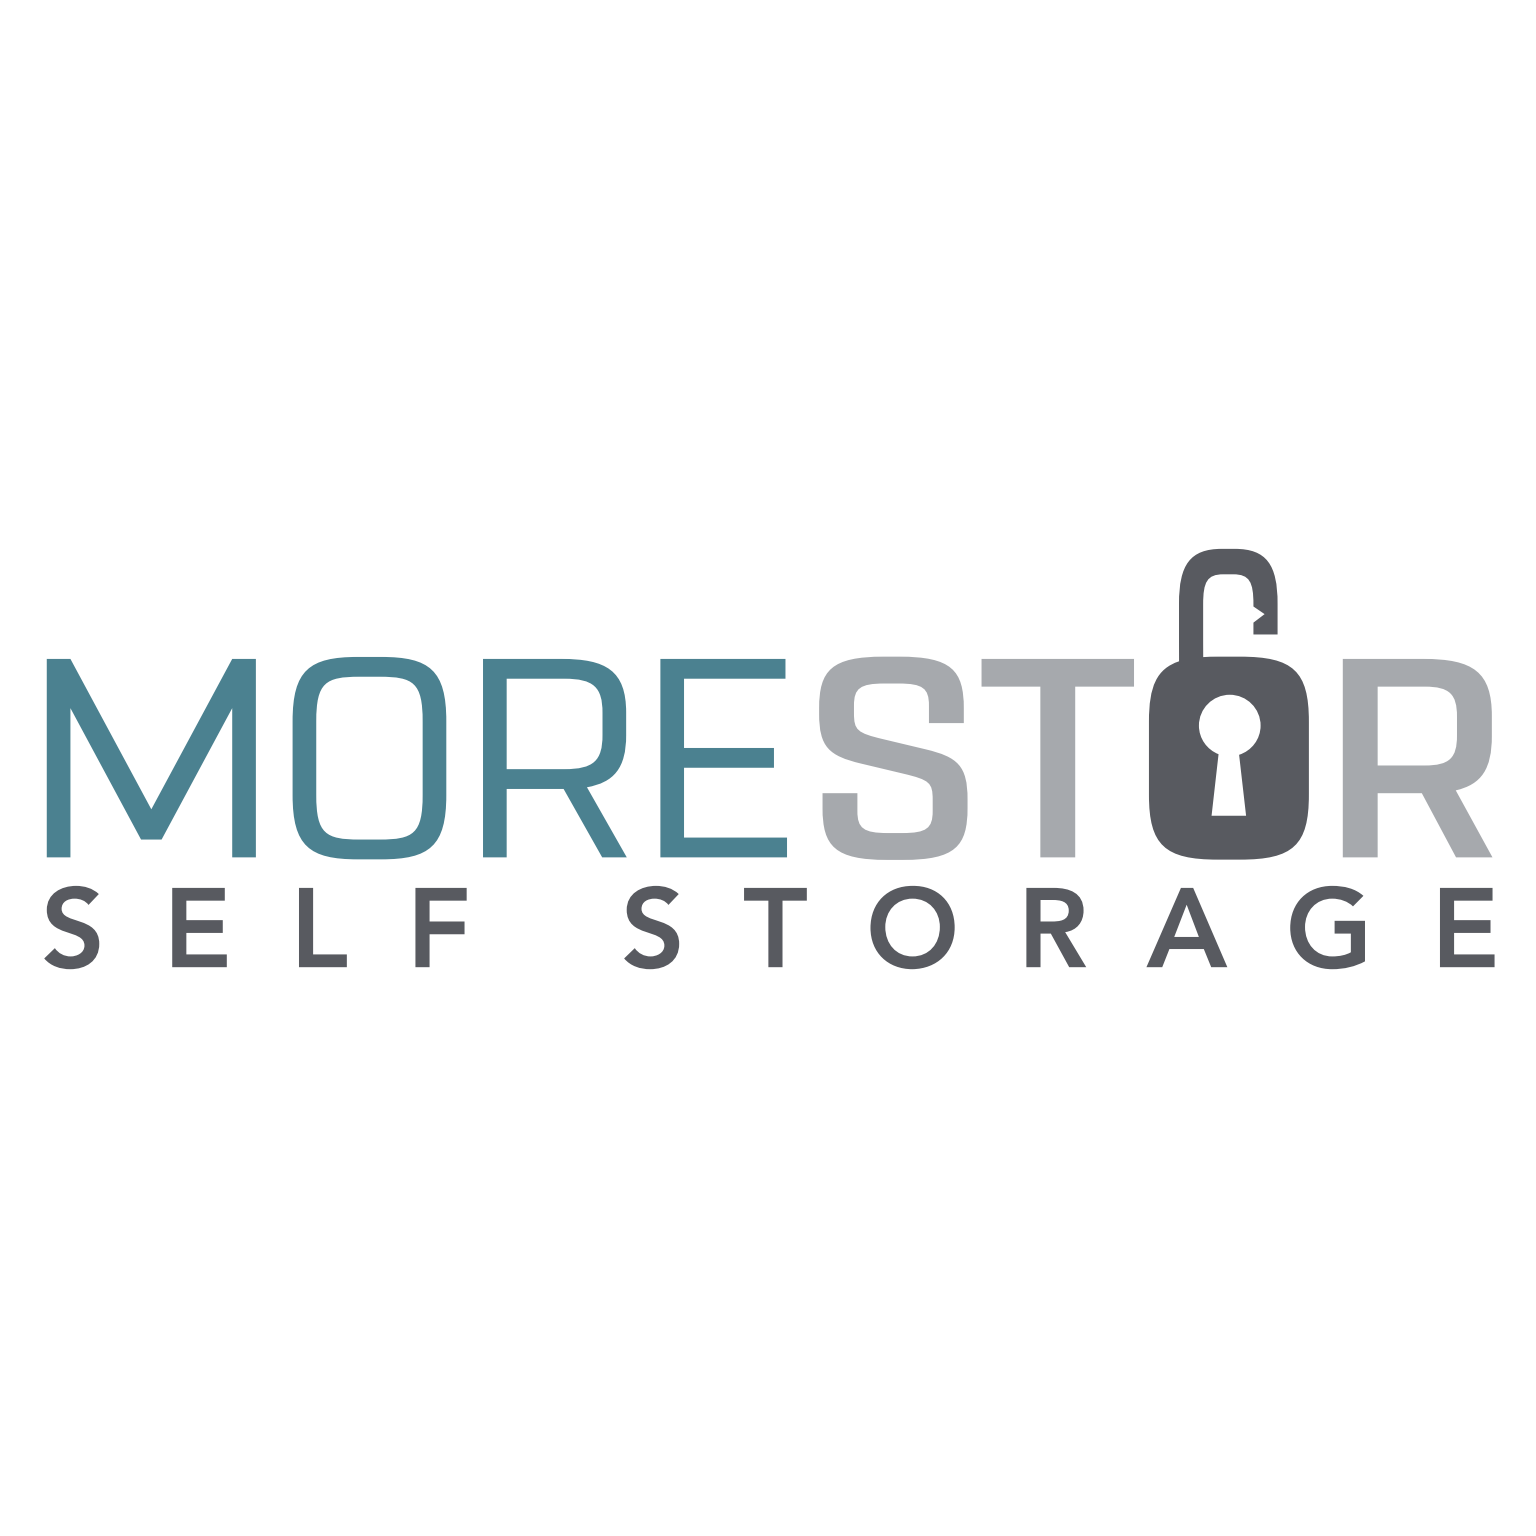 MoreStor Self Storage